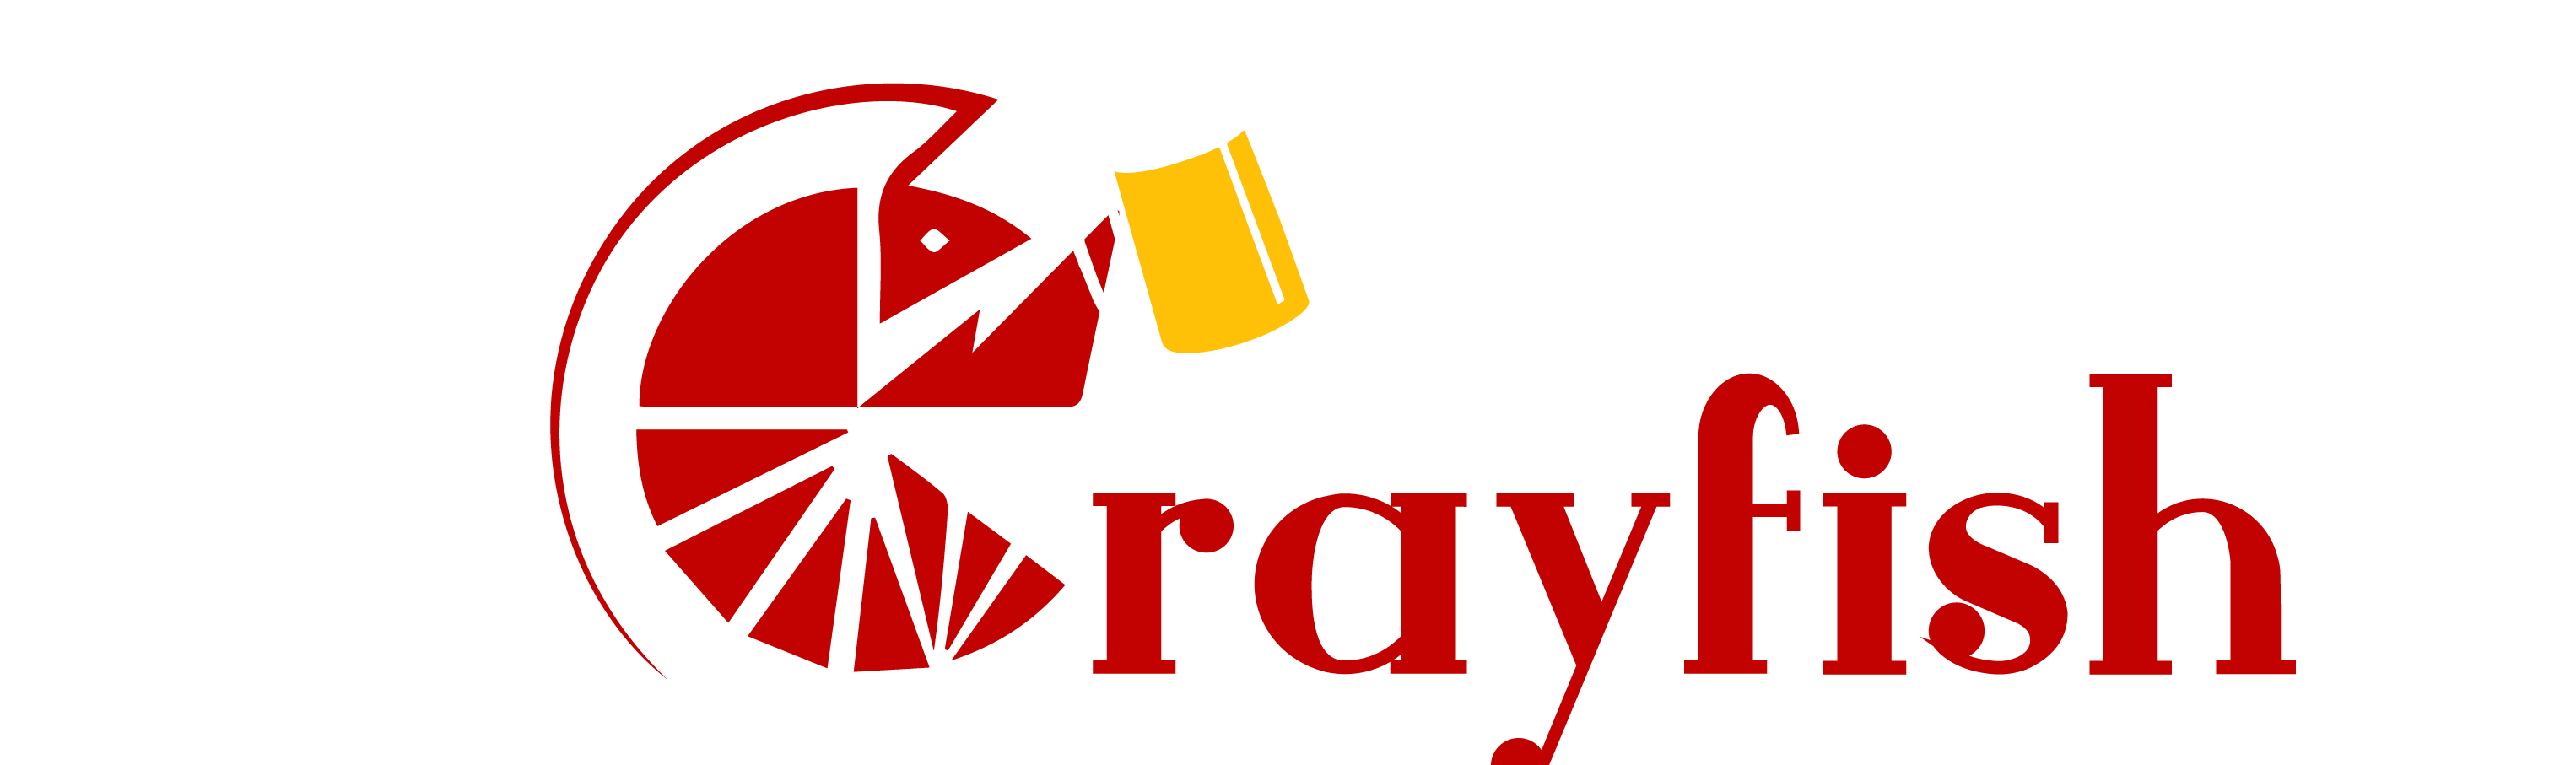 Crayfish Logo - Home Crayfish News